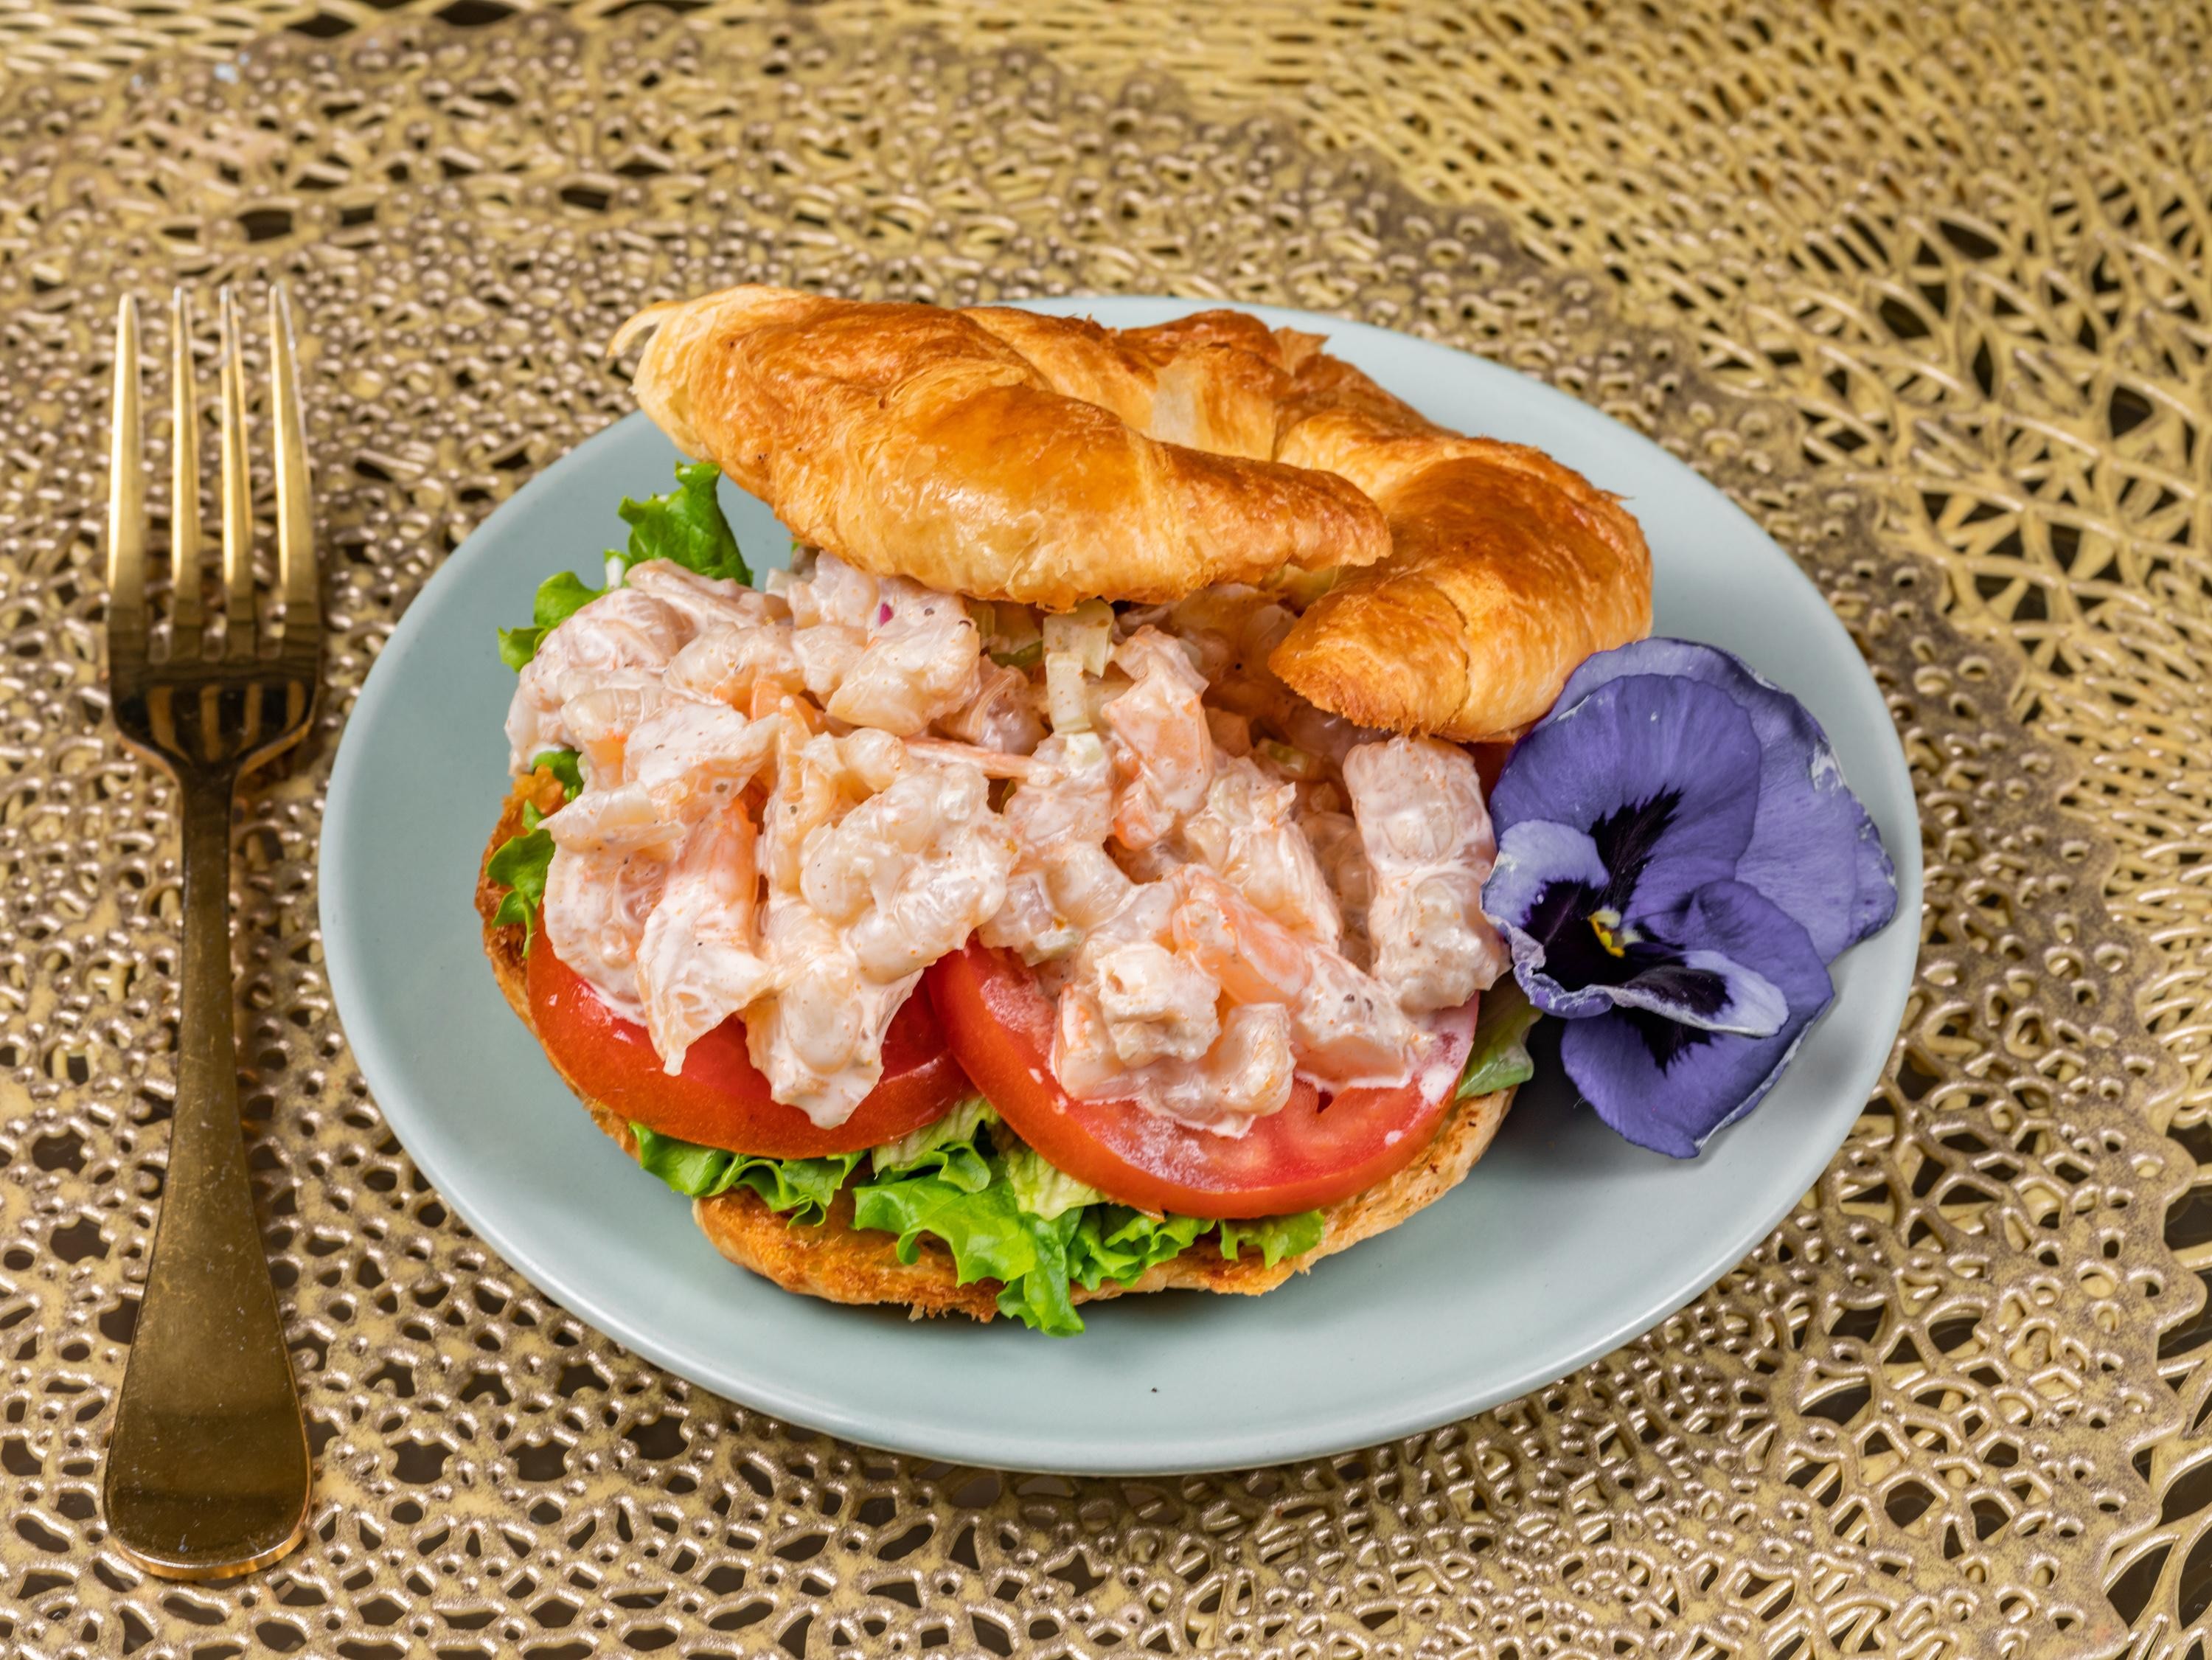 Shrimp Salad Sandwich